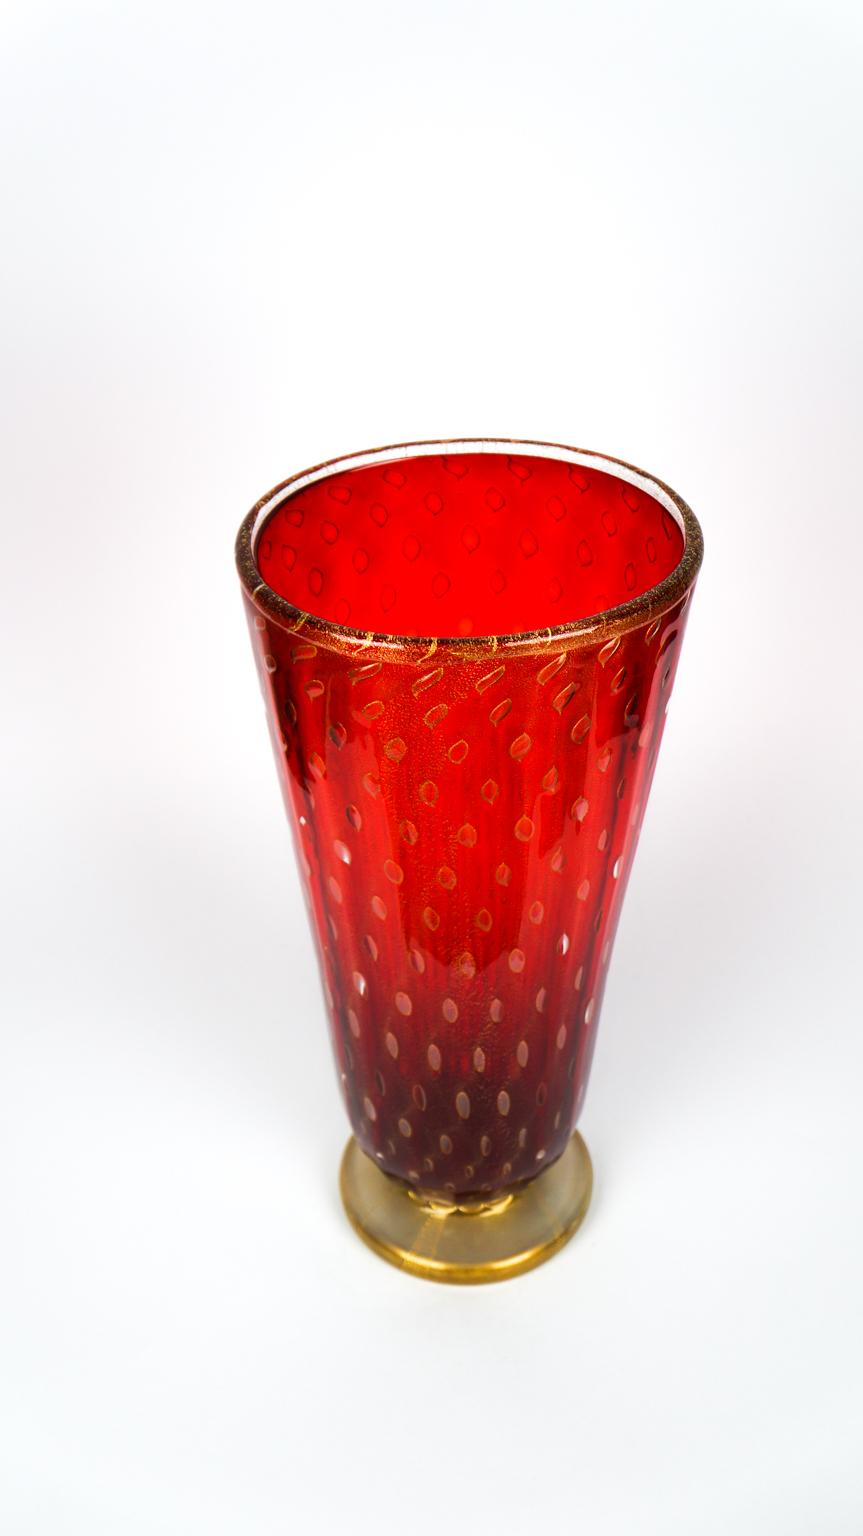 Art Deco Red Gold Design Italian Art Glass Vase by Stefano Mattiello In New Condition For Sale In Murano, Venezia